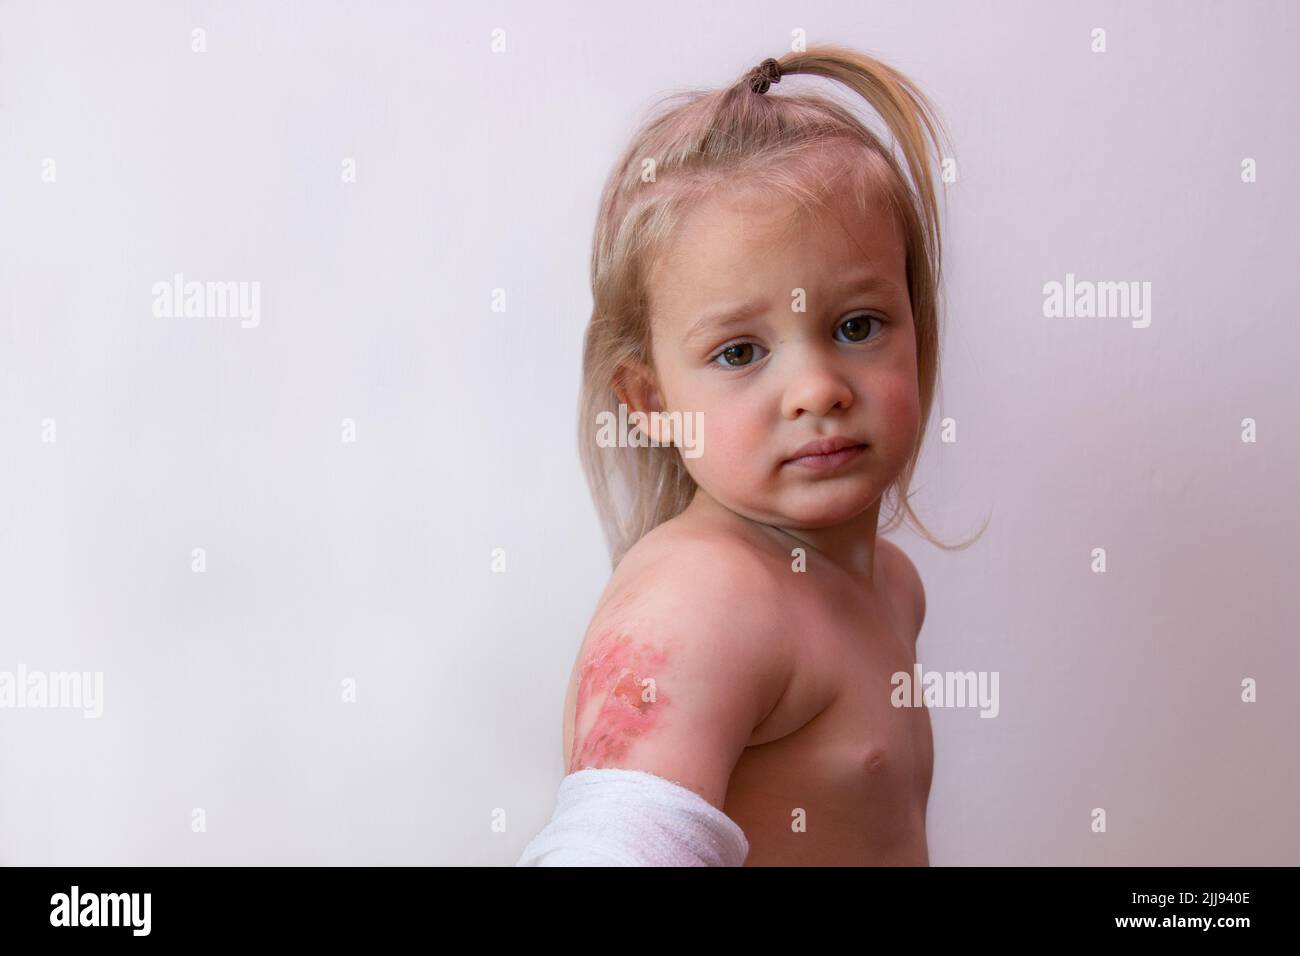 Verbrannter Arm eines kleinen Kindes, Kinder verbrennt Verletzungen, nette Trouble-Junge Kleinkind mit zweiten Grad Verbrühung, kopieren Raum Hintergrund Stockfoto